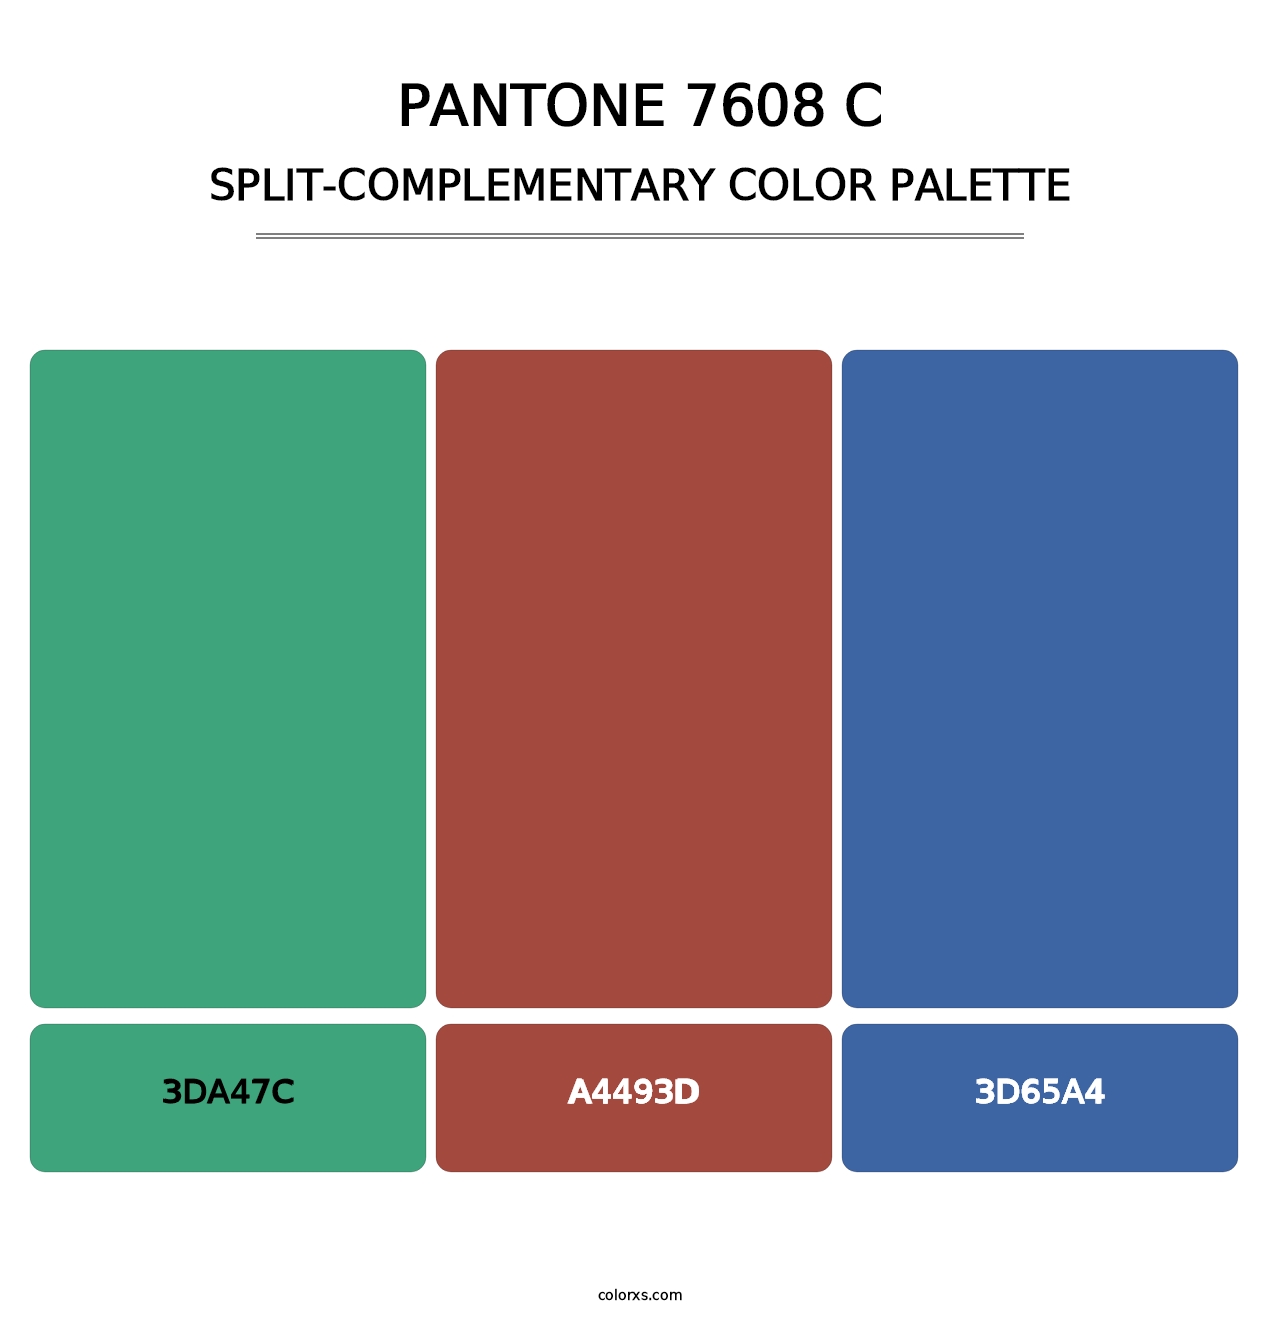 PANTONE 7608 C - Split-Complementary Color Palette